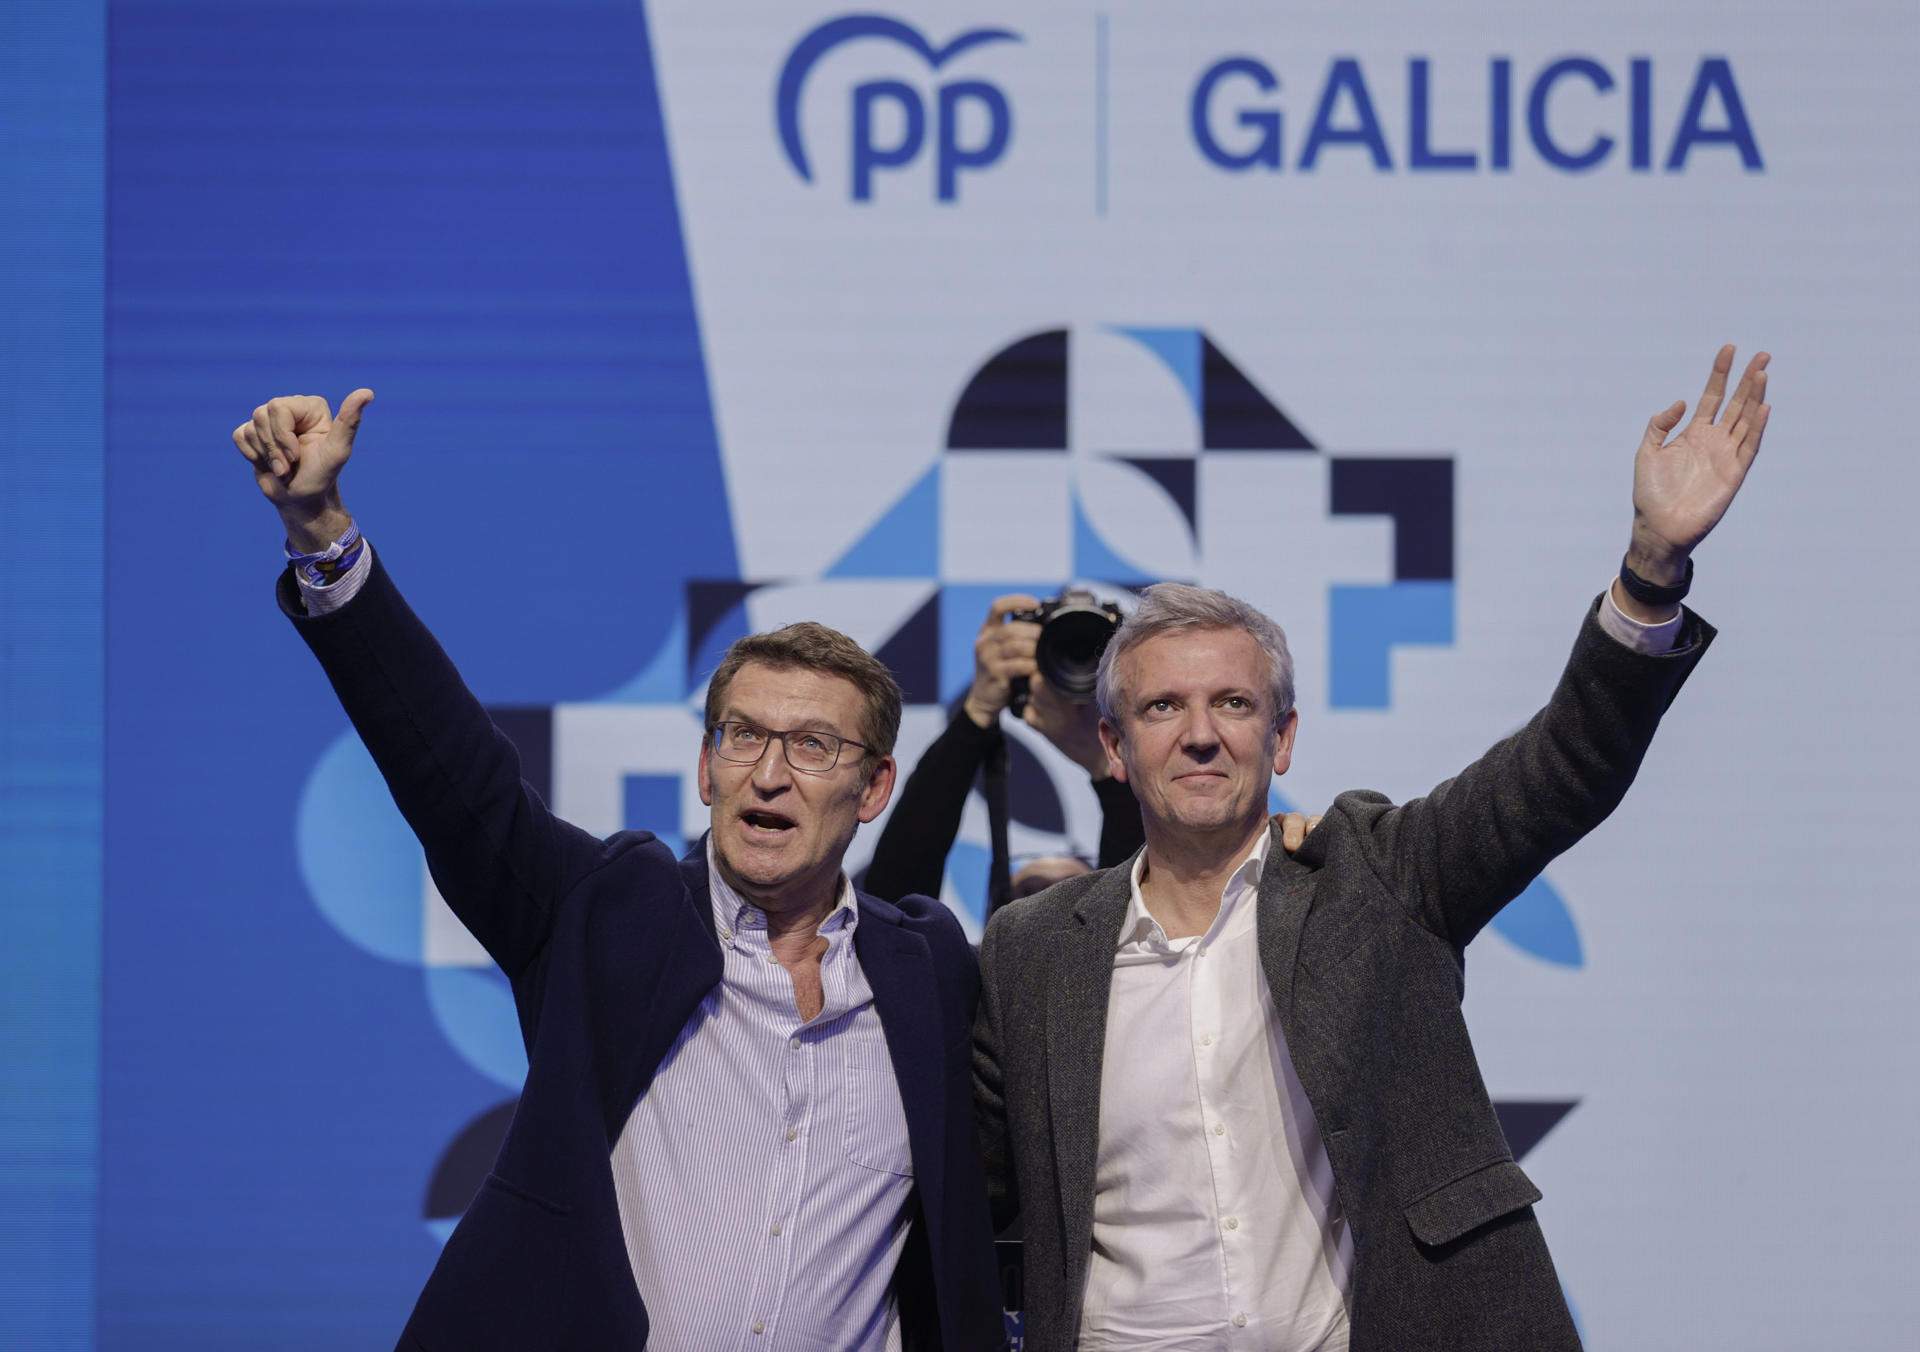 Feijóo sitúa el PP como la única opción para no “importar” a Galicia la “fractura social” de Catalunya